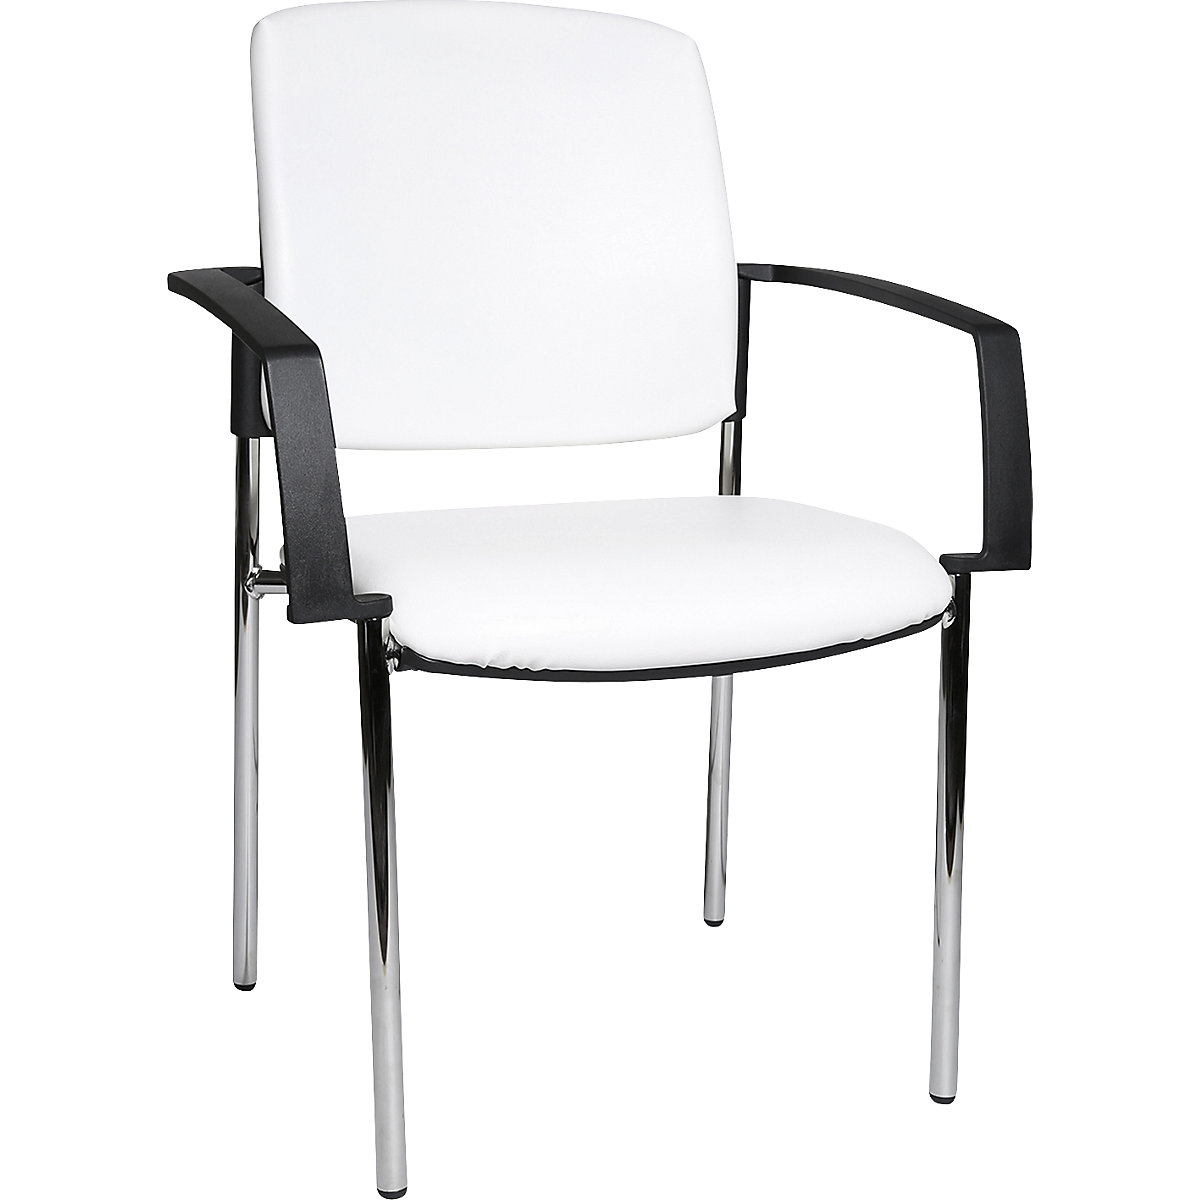 Cadeiras para visitas com apoios para braços, embalagem de 2 unid. – Topstar